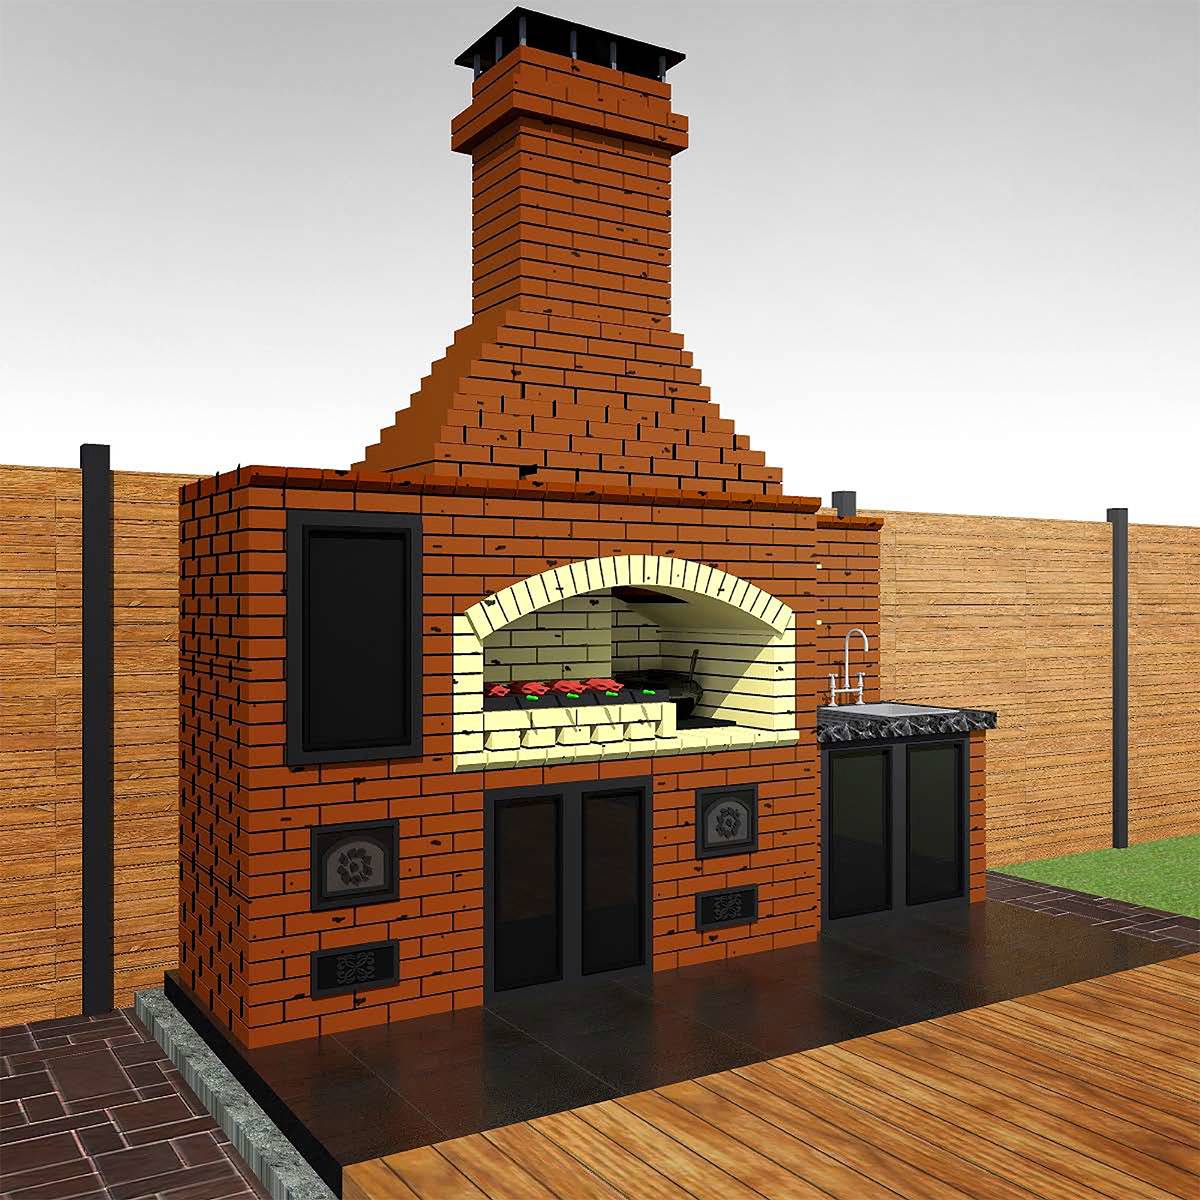 Проекты летней кухни на даче с барбекю мангалом – интересные идеи, фото